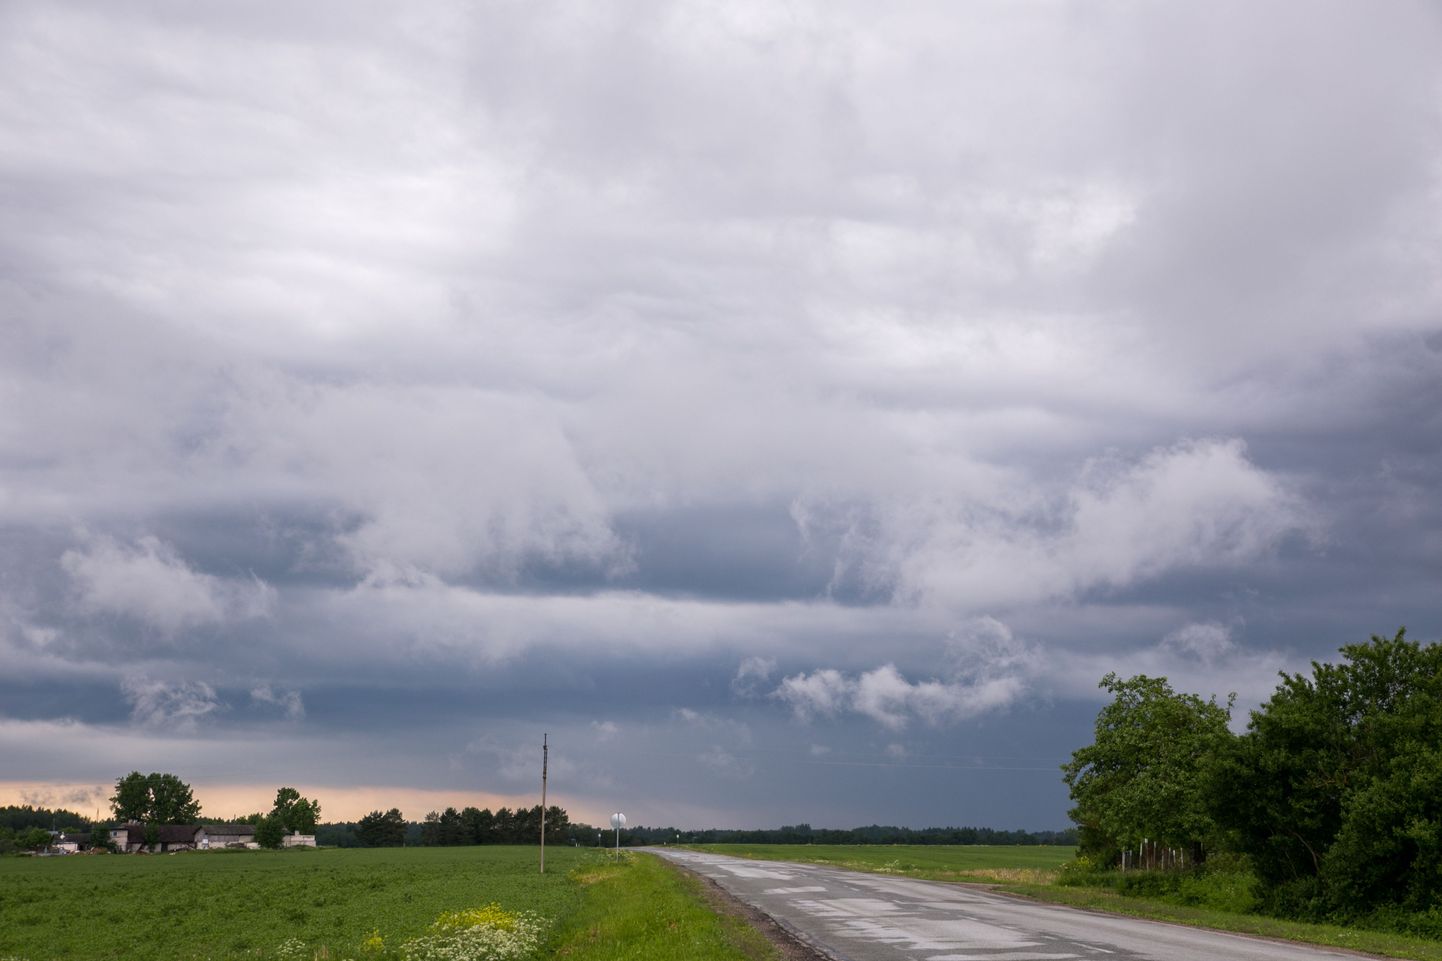 Pühapäevane ilmaprognoos lubab mitmel pool Eestis kostitada tugevate tuulepuhangute, hoovihma ja äikesega.